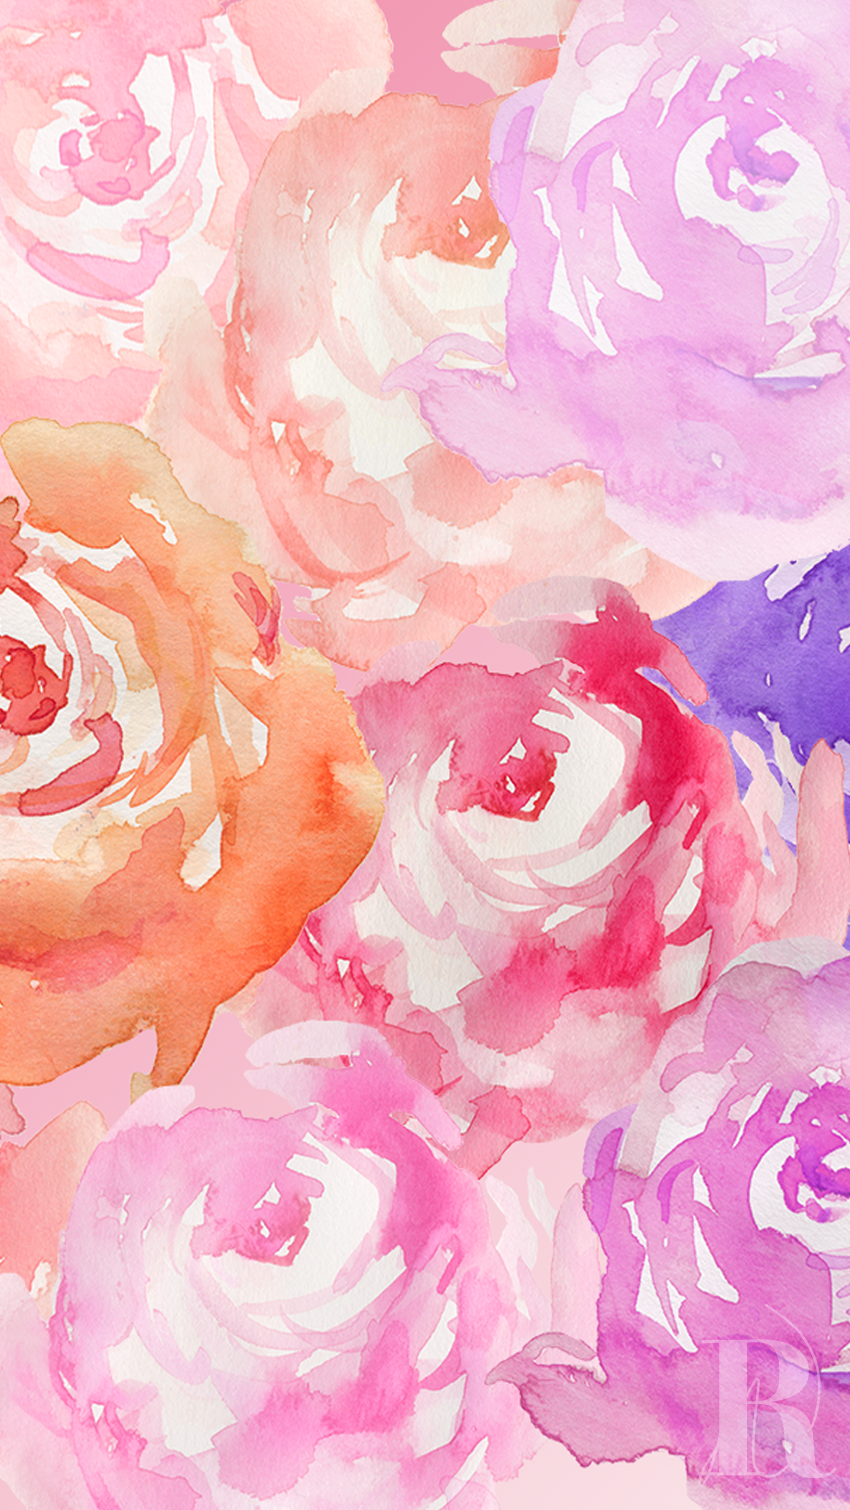 aquarell iphone wallpaper,gartenrosen,rosa,rose,rosenfamilie,blume